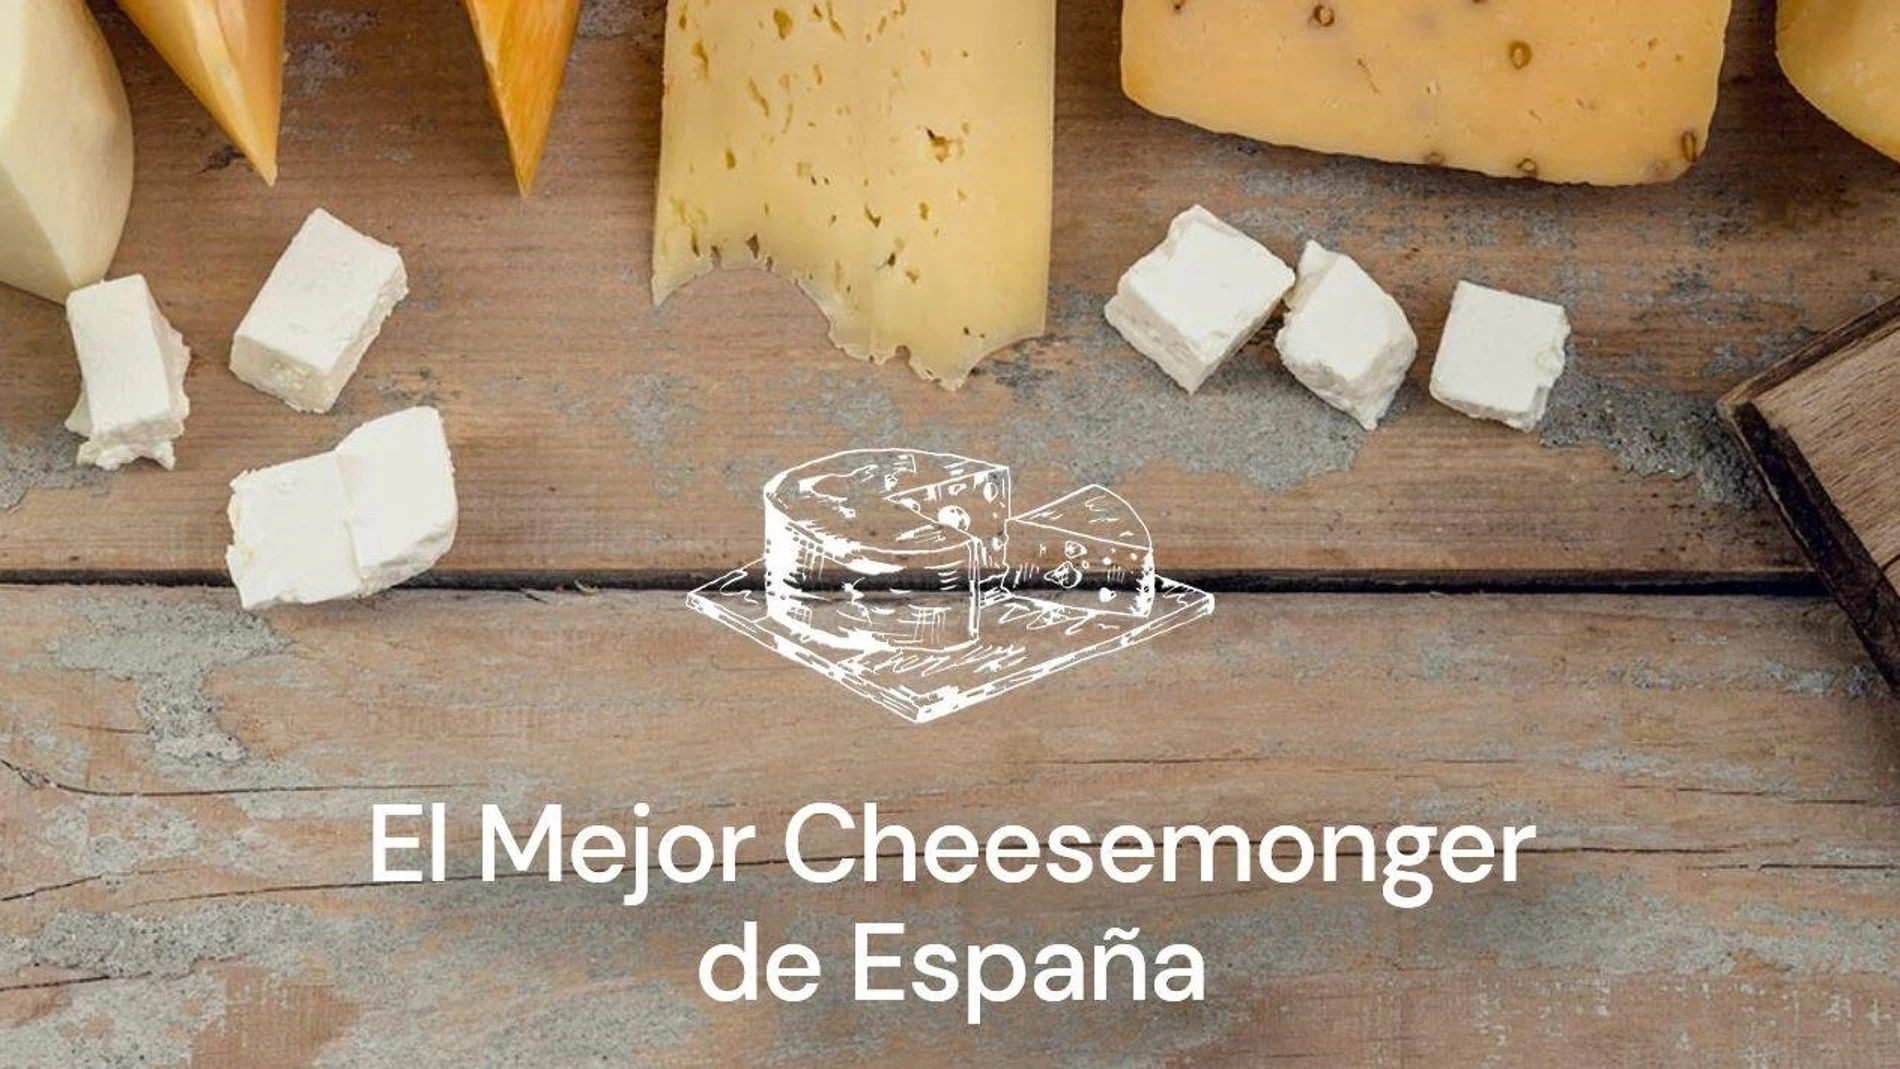 Imagen facilitada por Rueda Cheesemonger sobre el certamen al mejor prescriptor de España, con el patrocinio de "Tierra de Sabor"RUEDA CHEESEMONGER08/11/2020